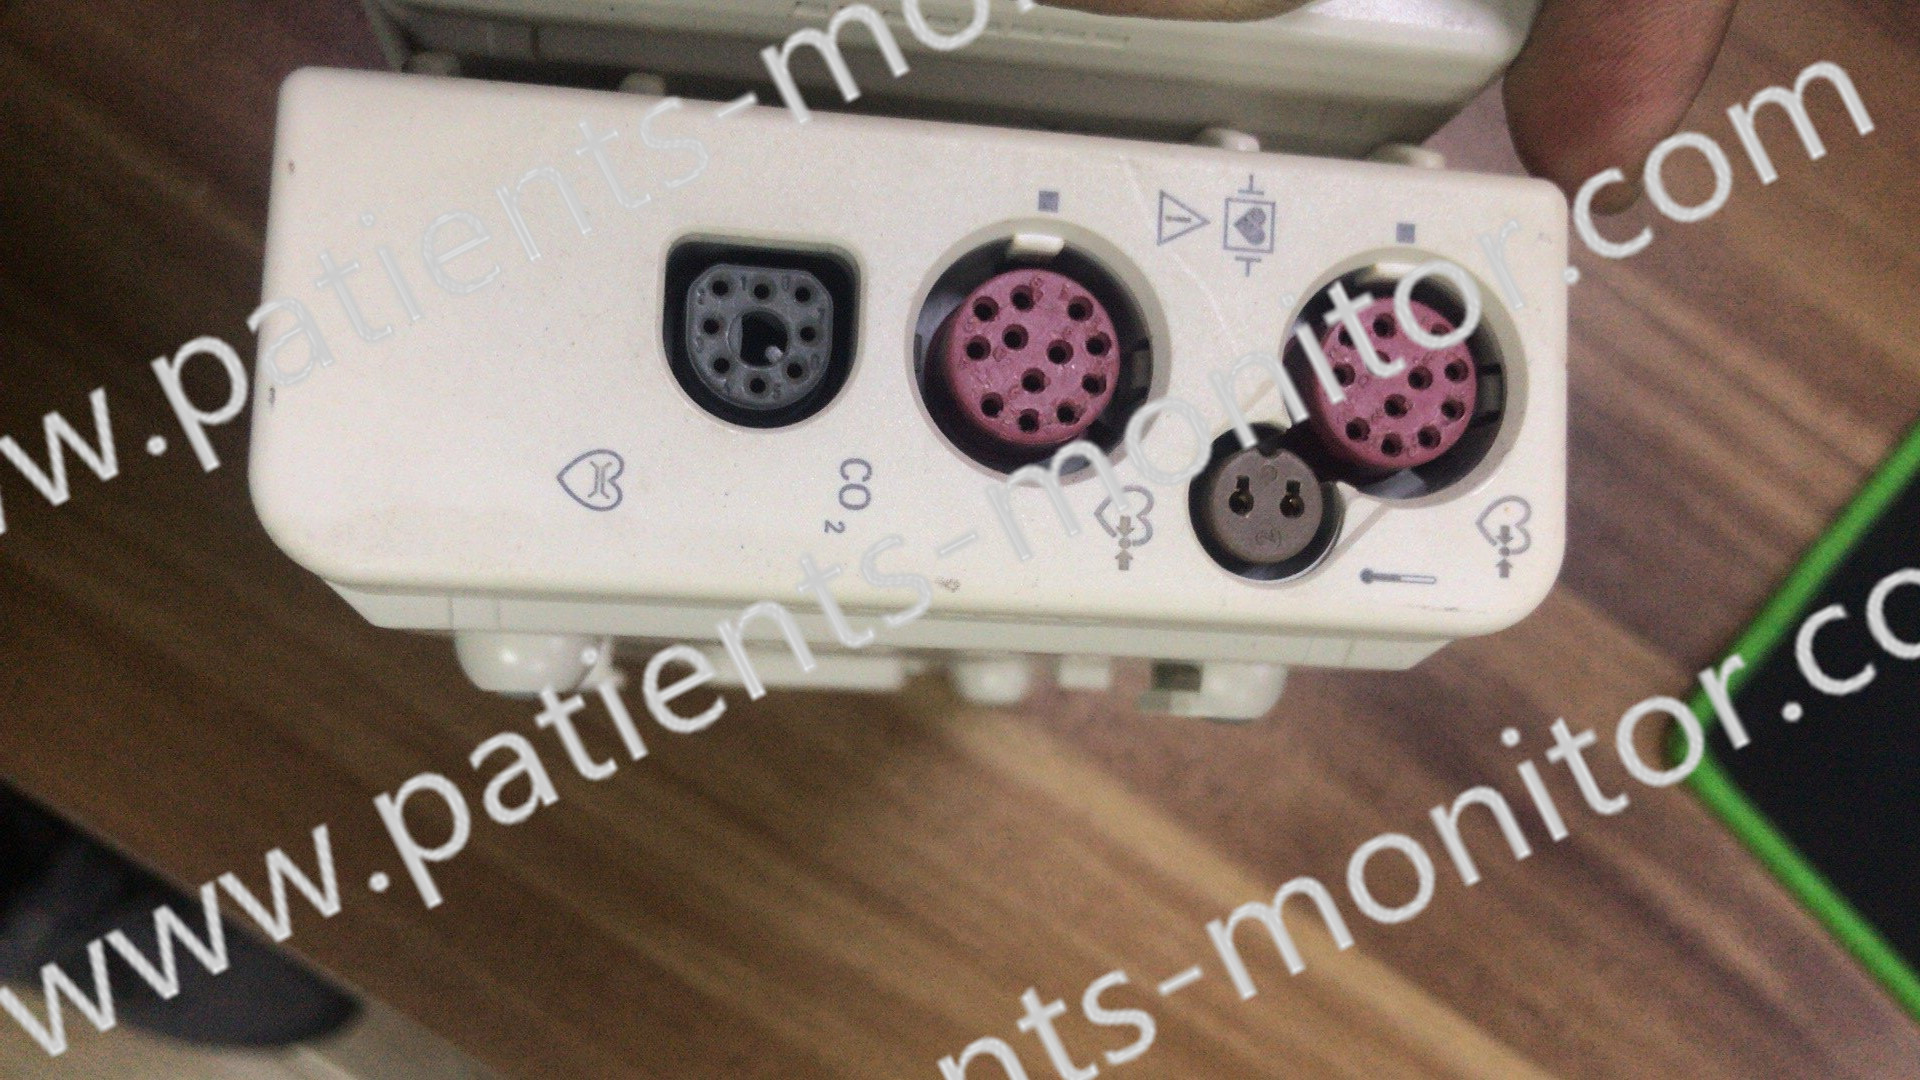 Peças do equipamento médico da respiração do CO2 do módulo do monitor paciente de M3014A